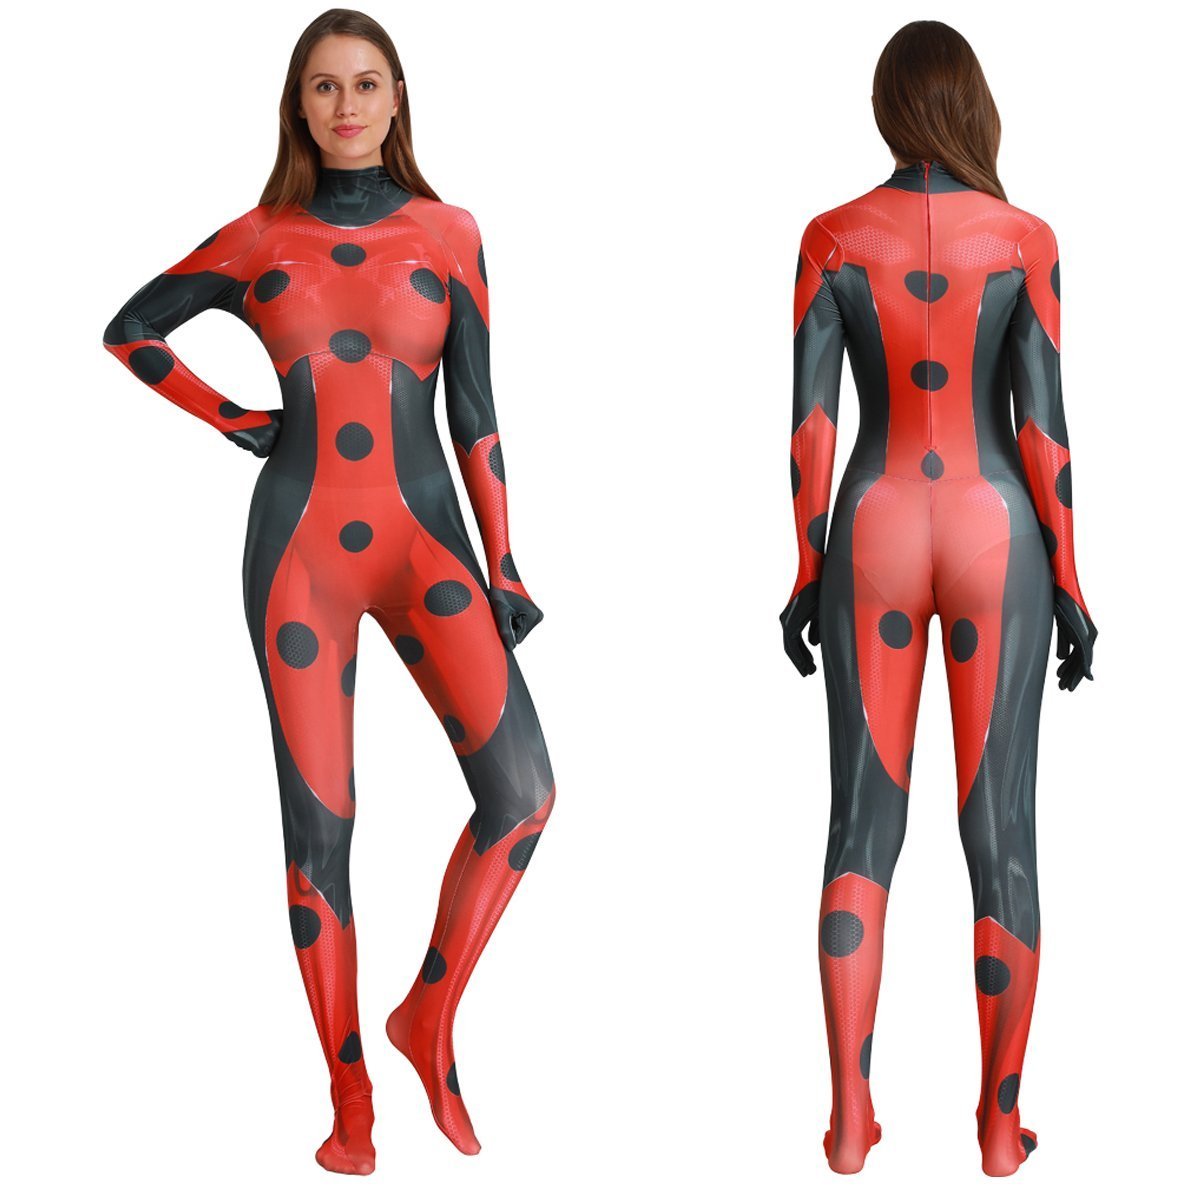 MrBug Female Cosplay Miraculous Ladybug Halloween Costume Zentai Bodysuit